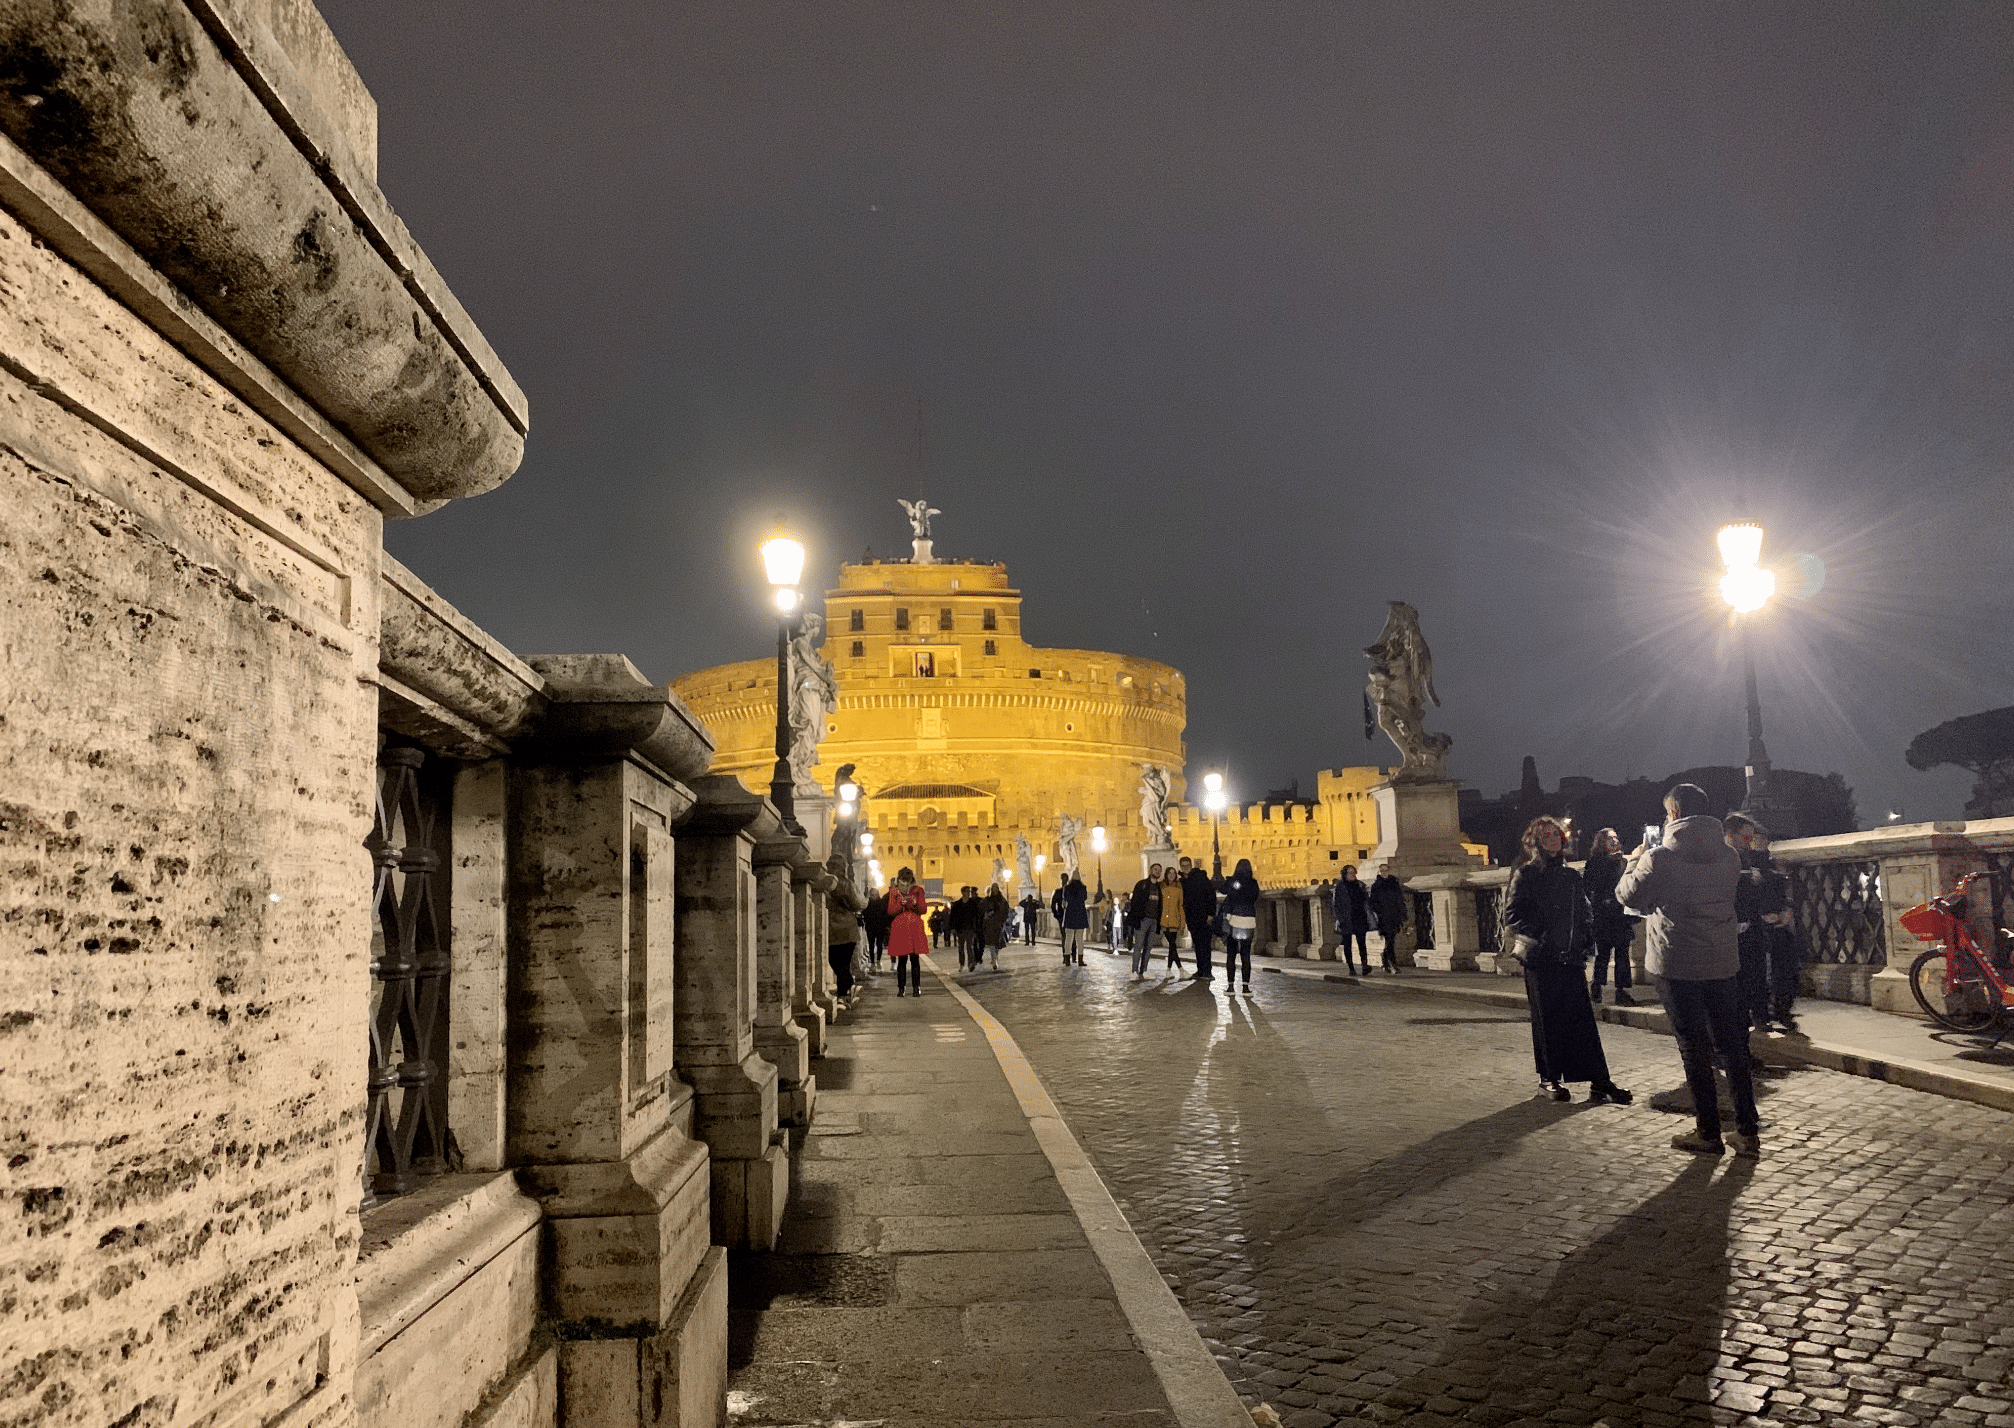 visiter rome : le mausolee d'hadrien